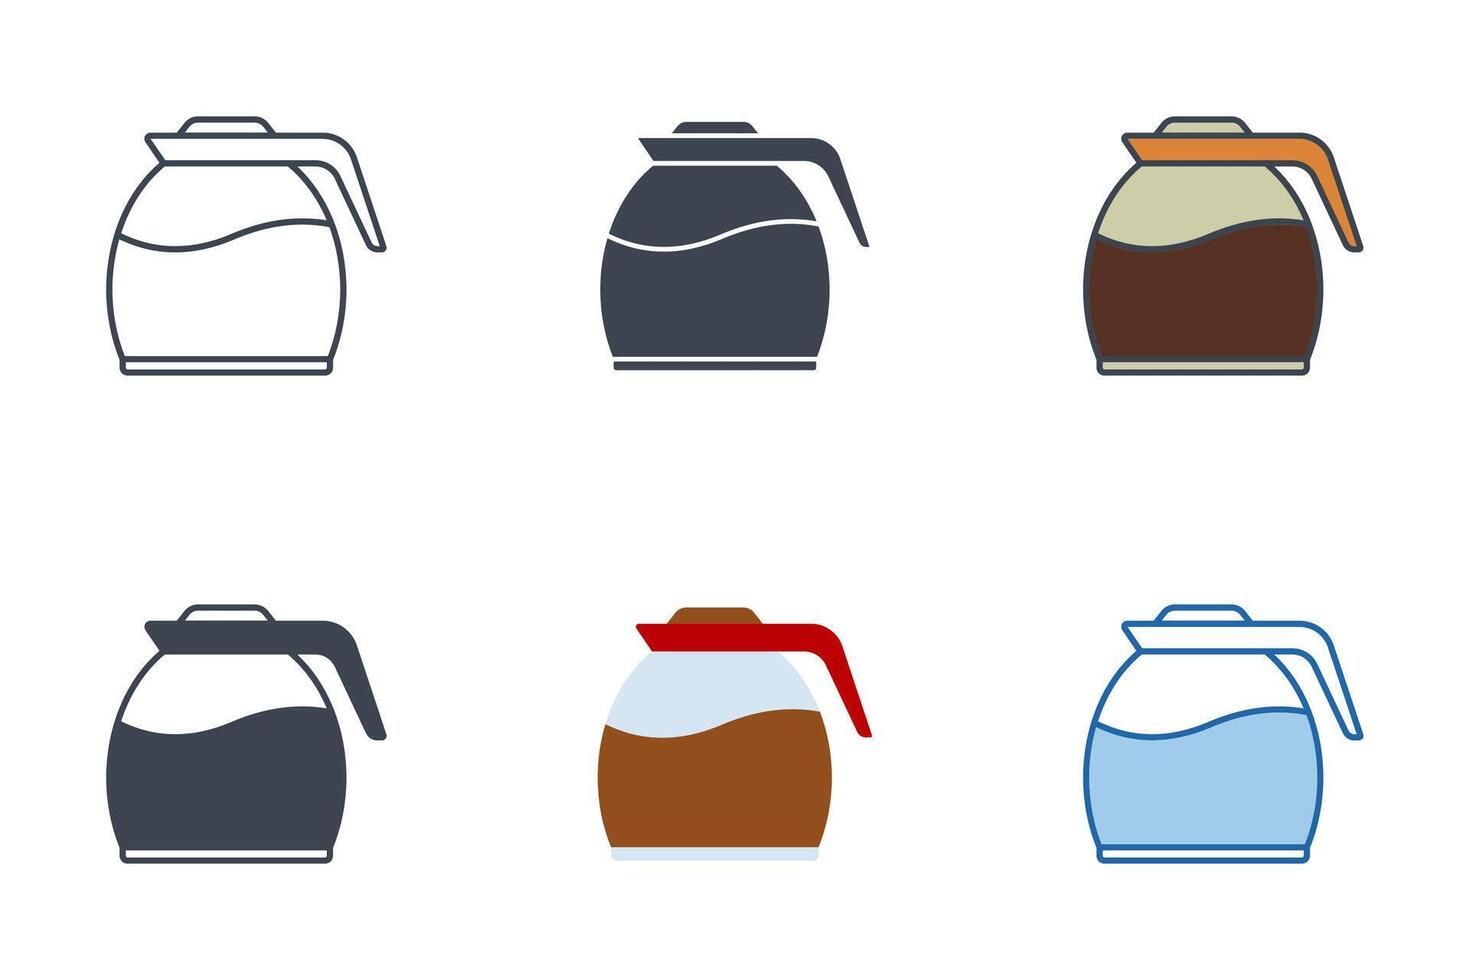 Kaffee Topf Symbole mit anders Stile. Kaffee Topf voll von Kaffee oder Tee Symbol Vektor Illustration isoliert auf Weiß Hintergrund